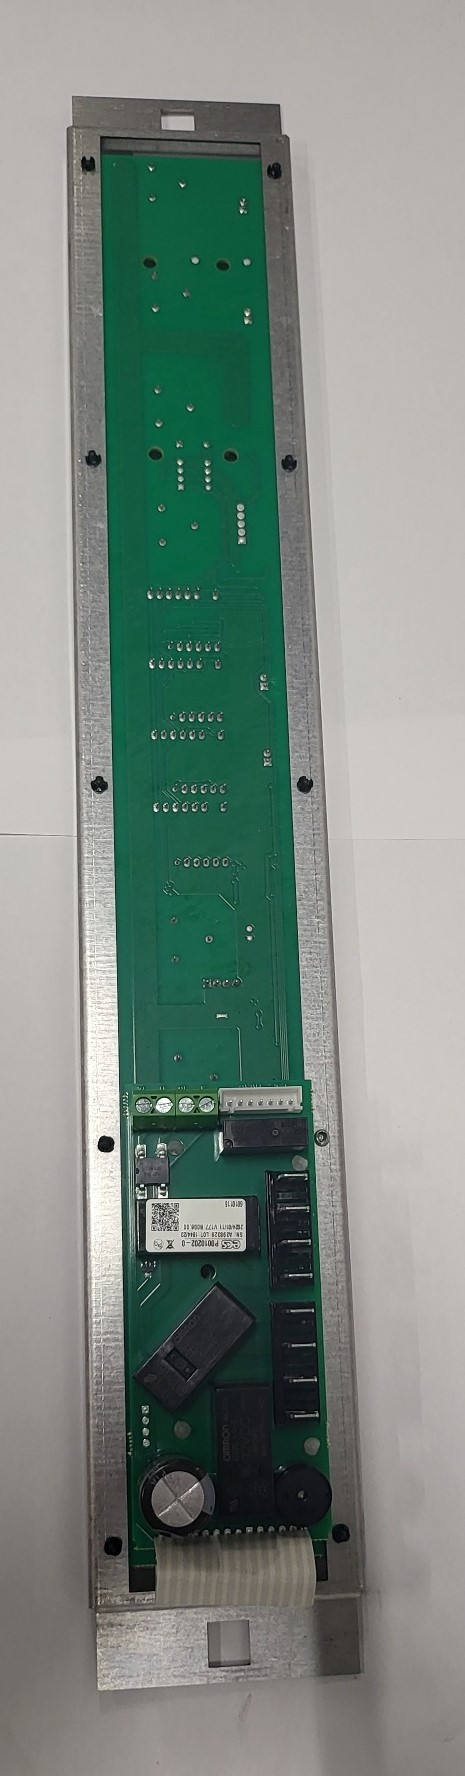 Giorik 6010115  ST30+40 PCB Main Control board